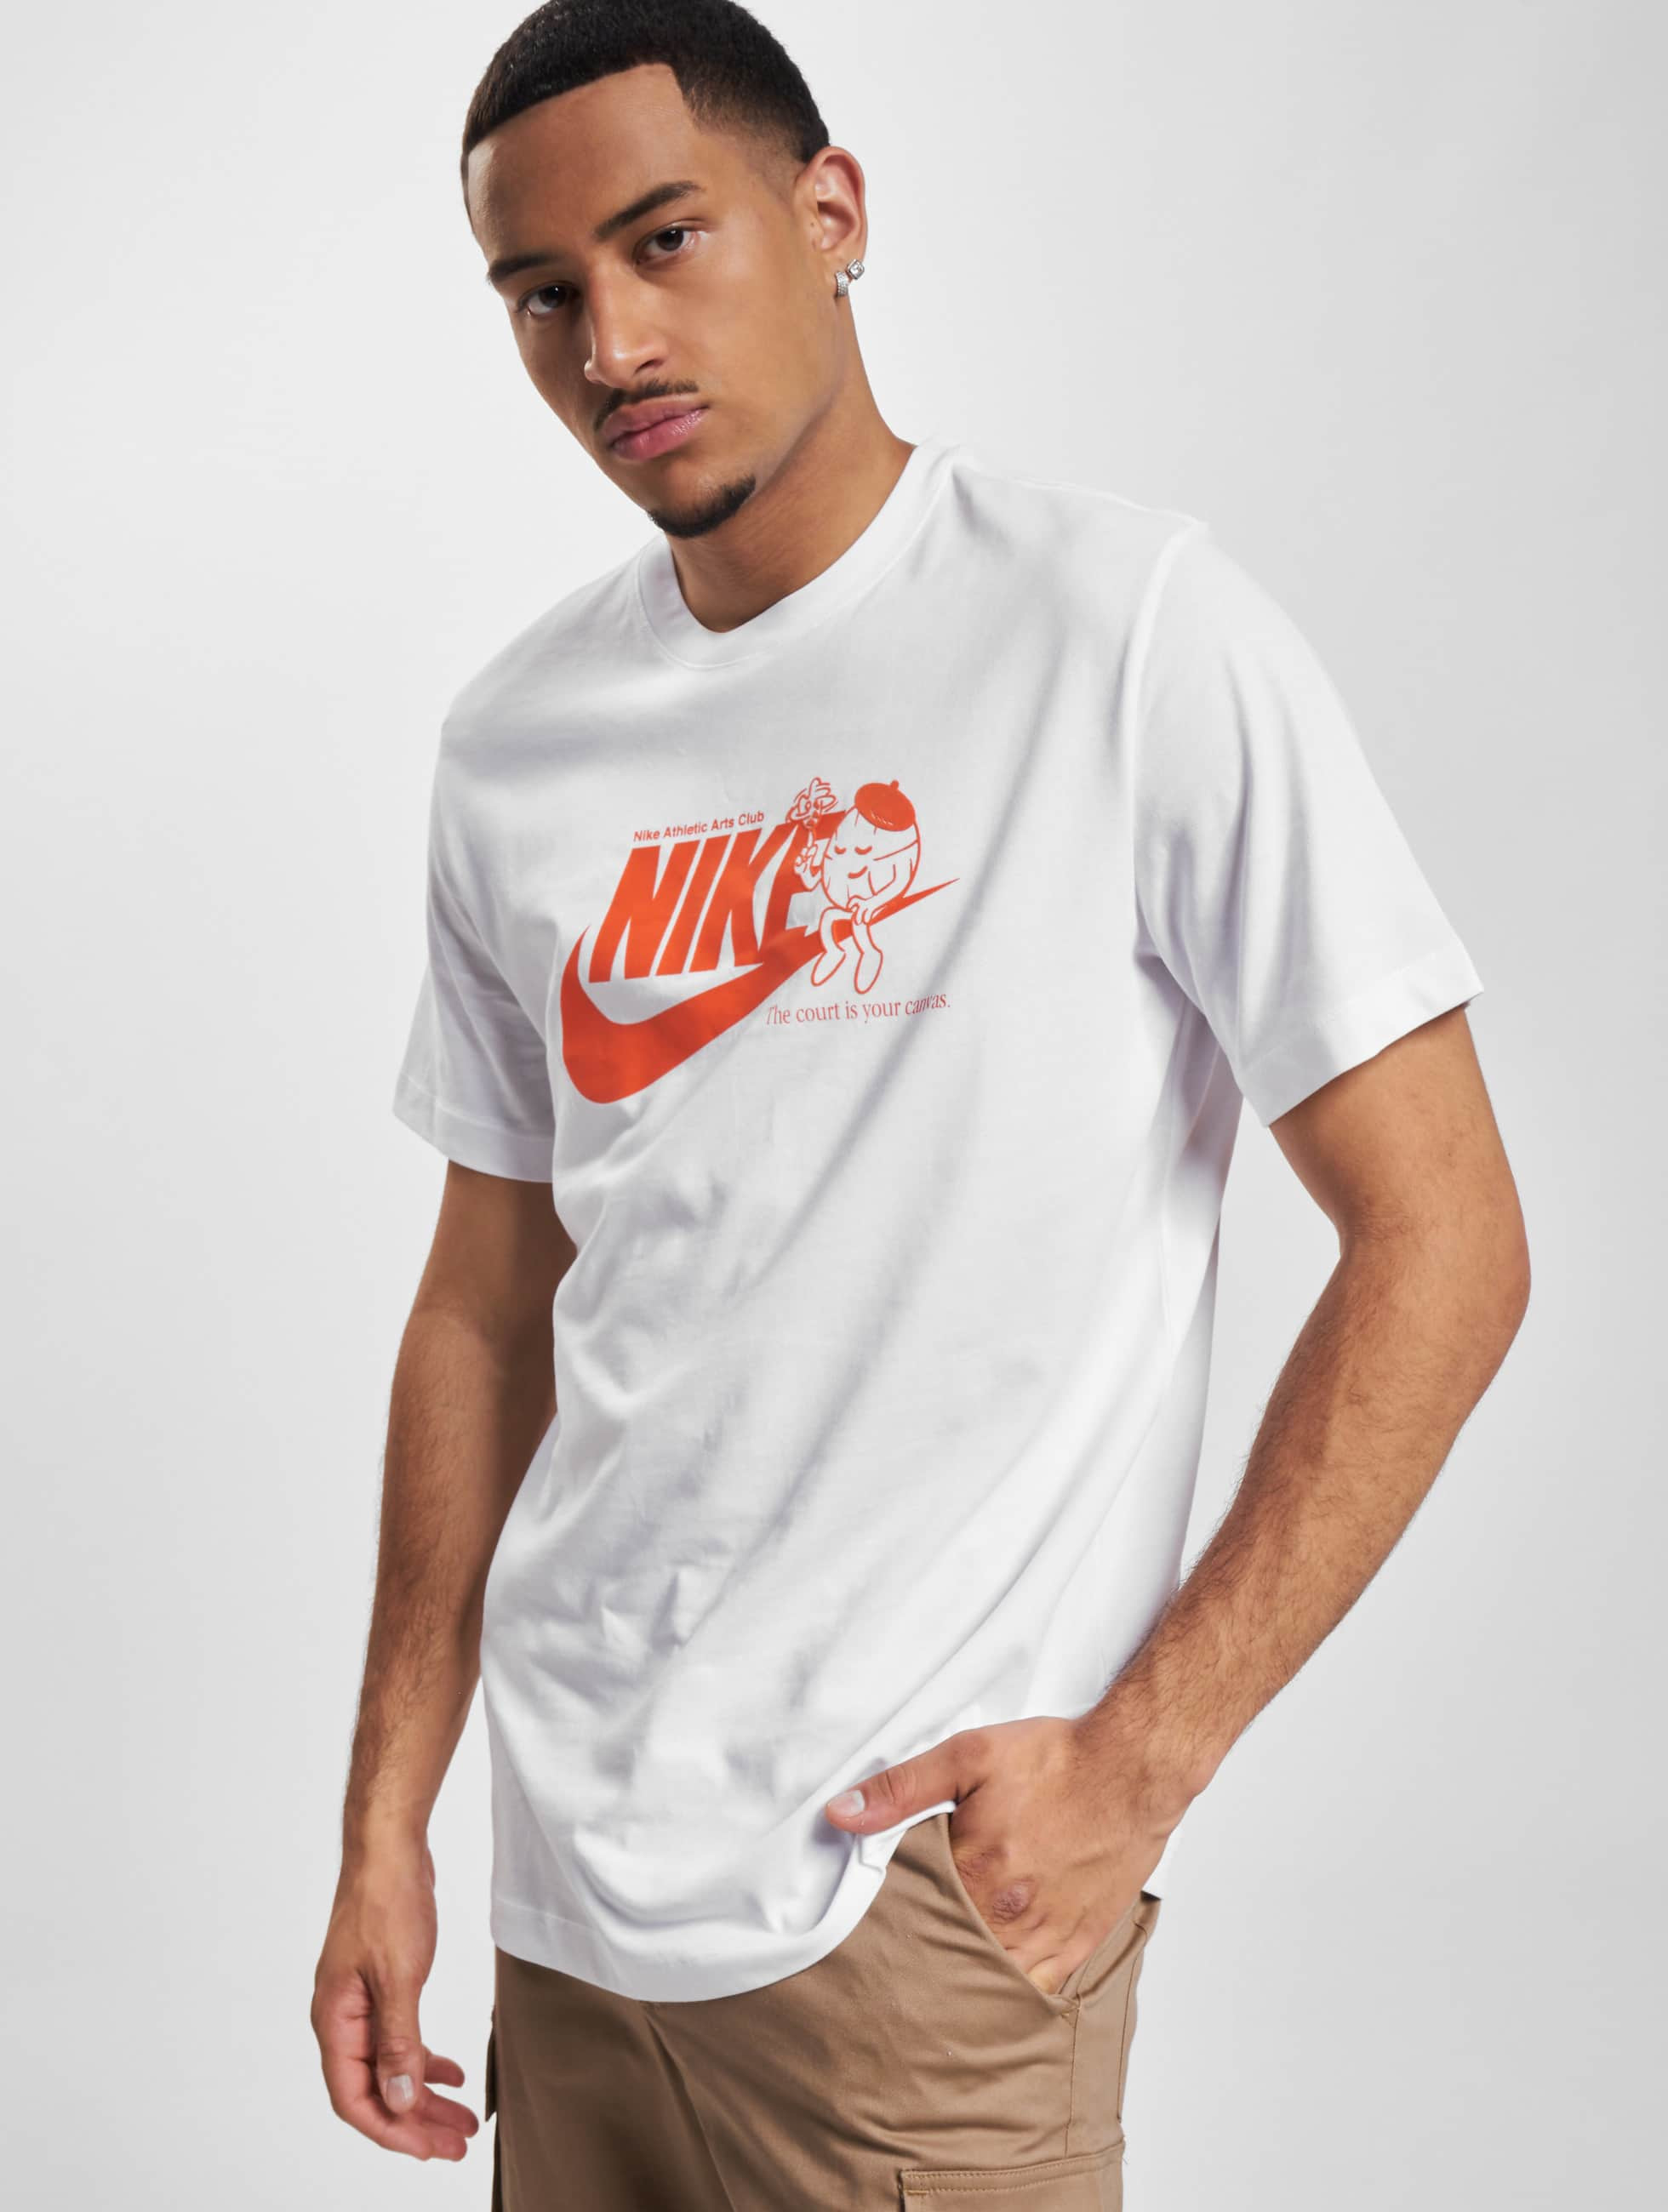 evenwicht het kan herfst Nike bovenstuk / t-shirt Art Is Sport in wit 1009004